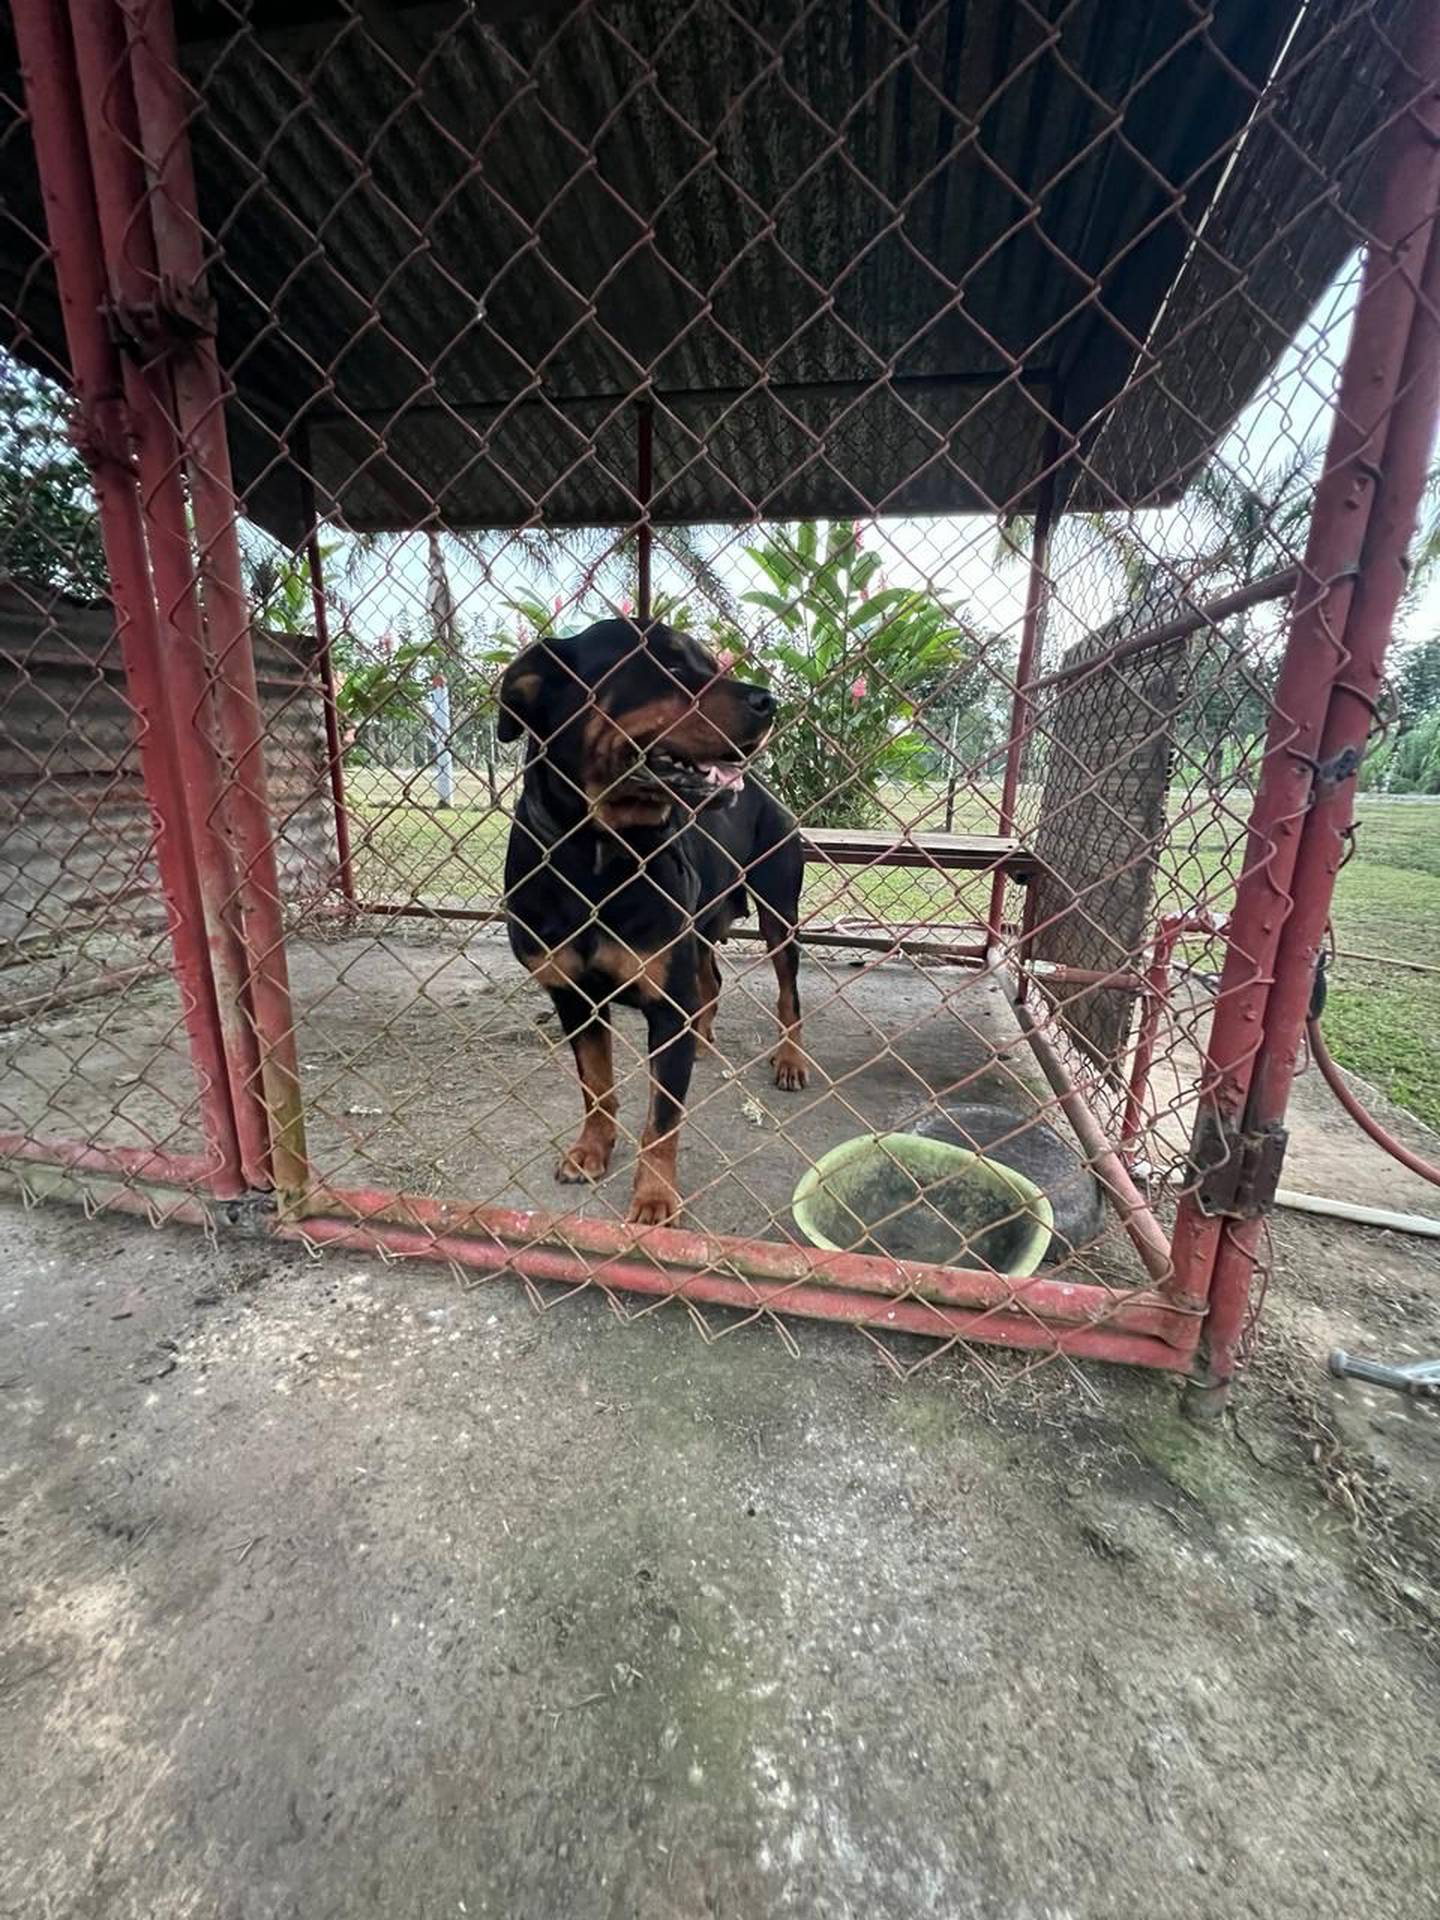 Personal del Senasa fue alertado para determinar lo ocurrido y hacerse cargo de la perra rottweiler. Foto: Edgar Chinchilla.